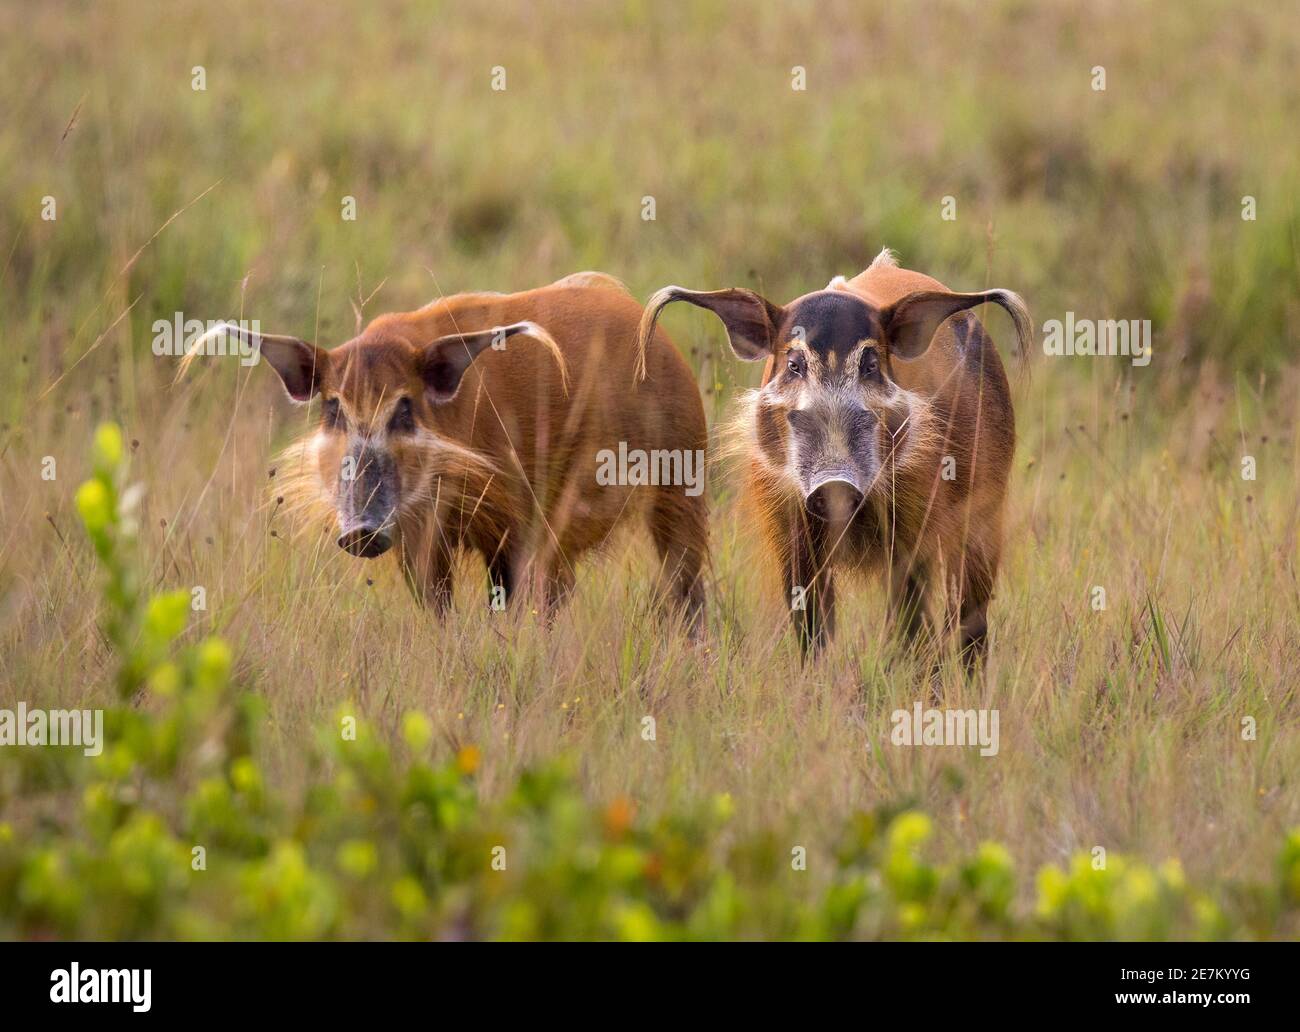 Red River Hog (Potamochoerus porcus), femelle à gauche, mâle à droite, Parc national de Loango, Gabon, Afrique centrale. Banque D'Images